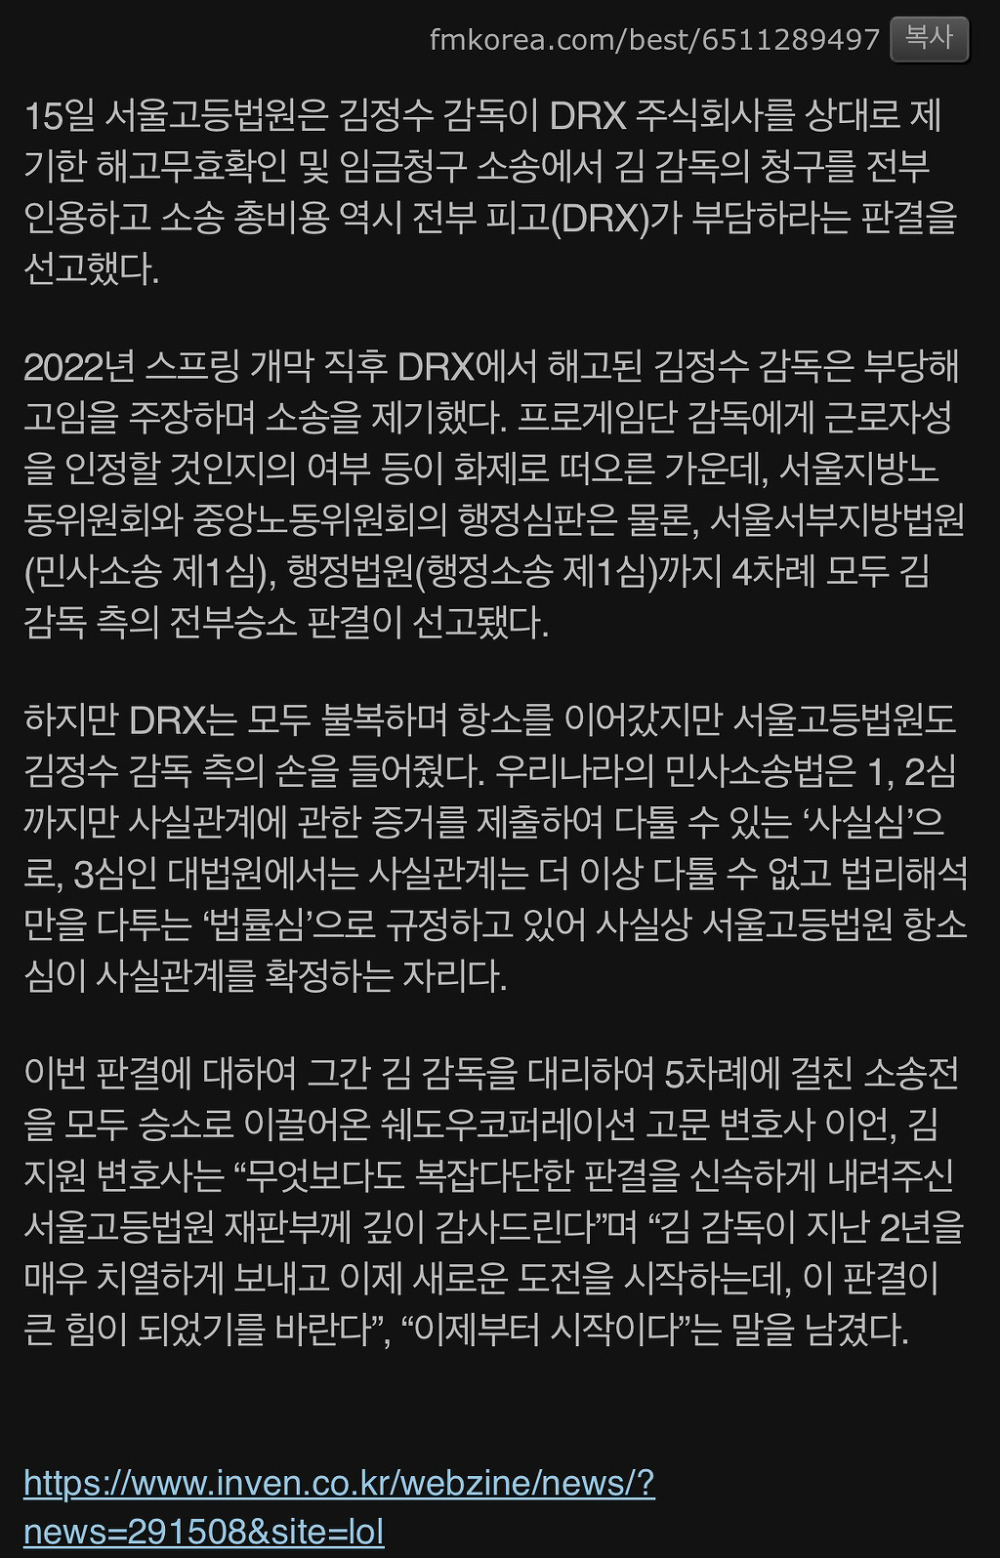 김정수 감독, DRX 소송전 5전 전승... 이번에도 항소 기각 -cboard